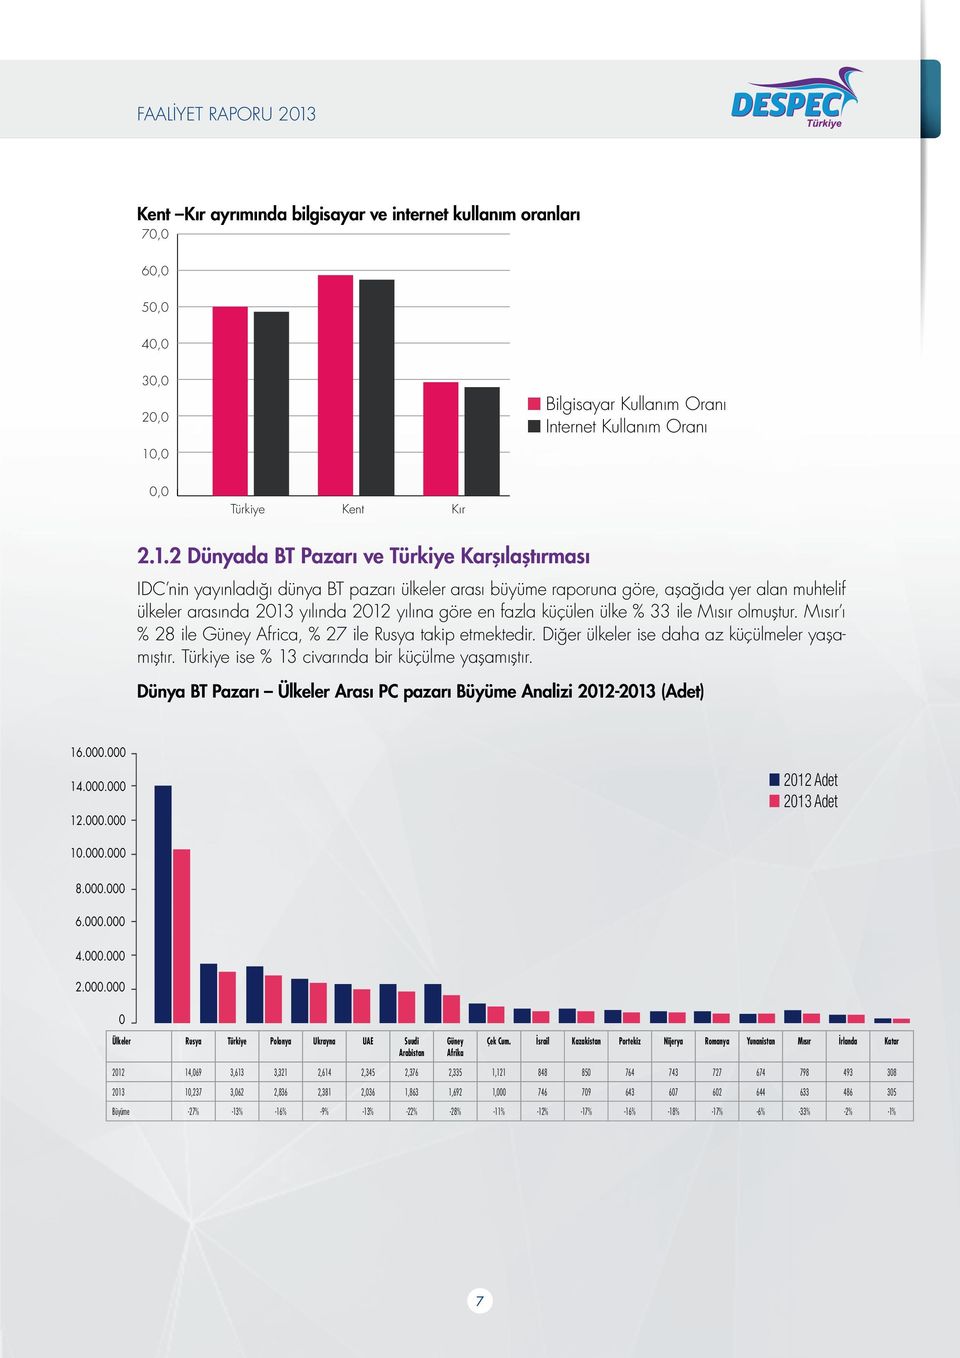 2 Dünyada BT Pazarı ve Türkiye Karşılaştırması IDC nin yayınladığı dünya BT pazarı ülkeler arası büyüme raporuna göre, aşağıda yer alan muhtelif ülkeler arasında 2013 yılında 2012 yılına göre en